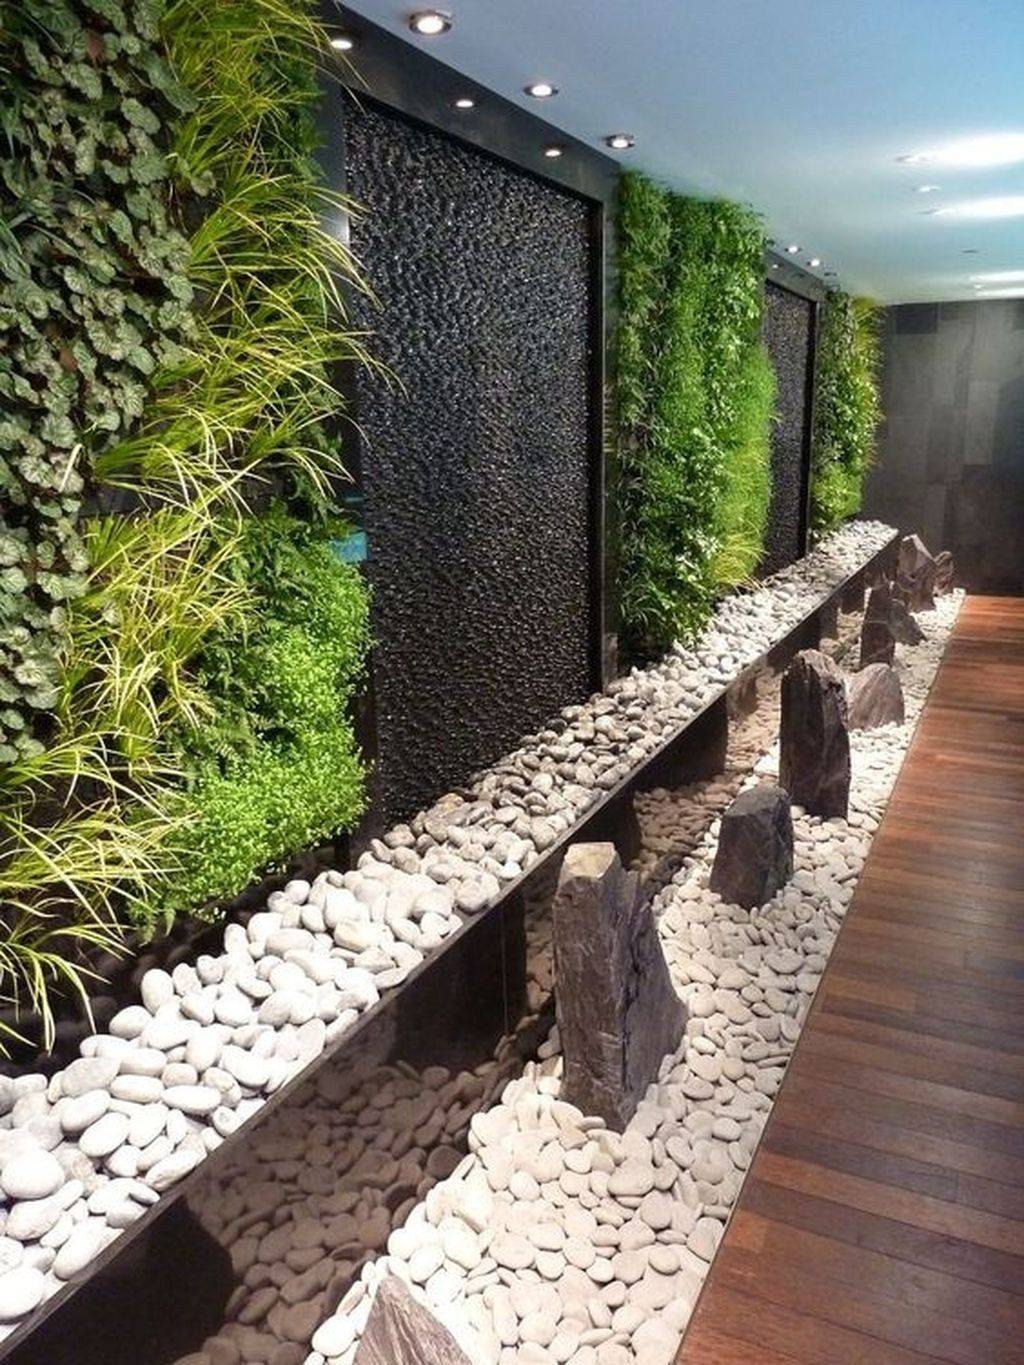 An Indoor Vertical Garden